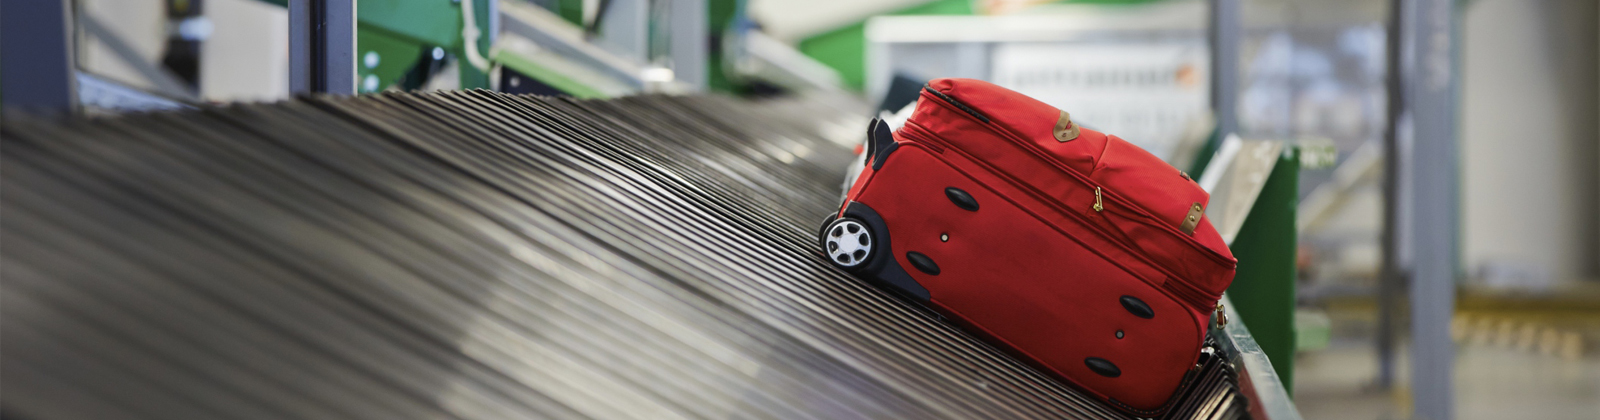 Как не потерять чемодан во время путешествий